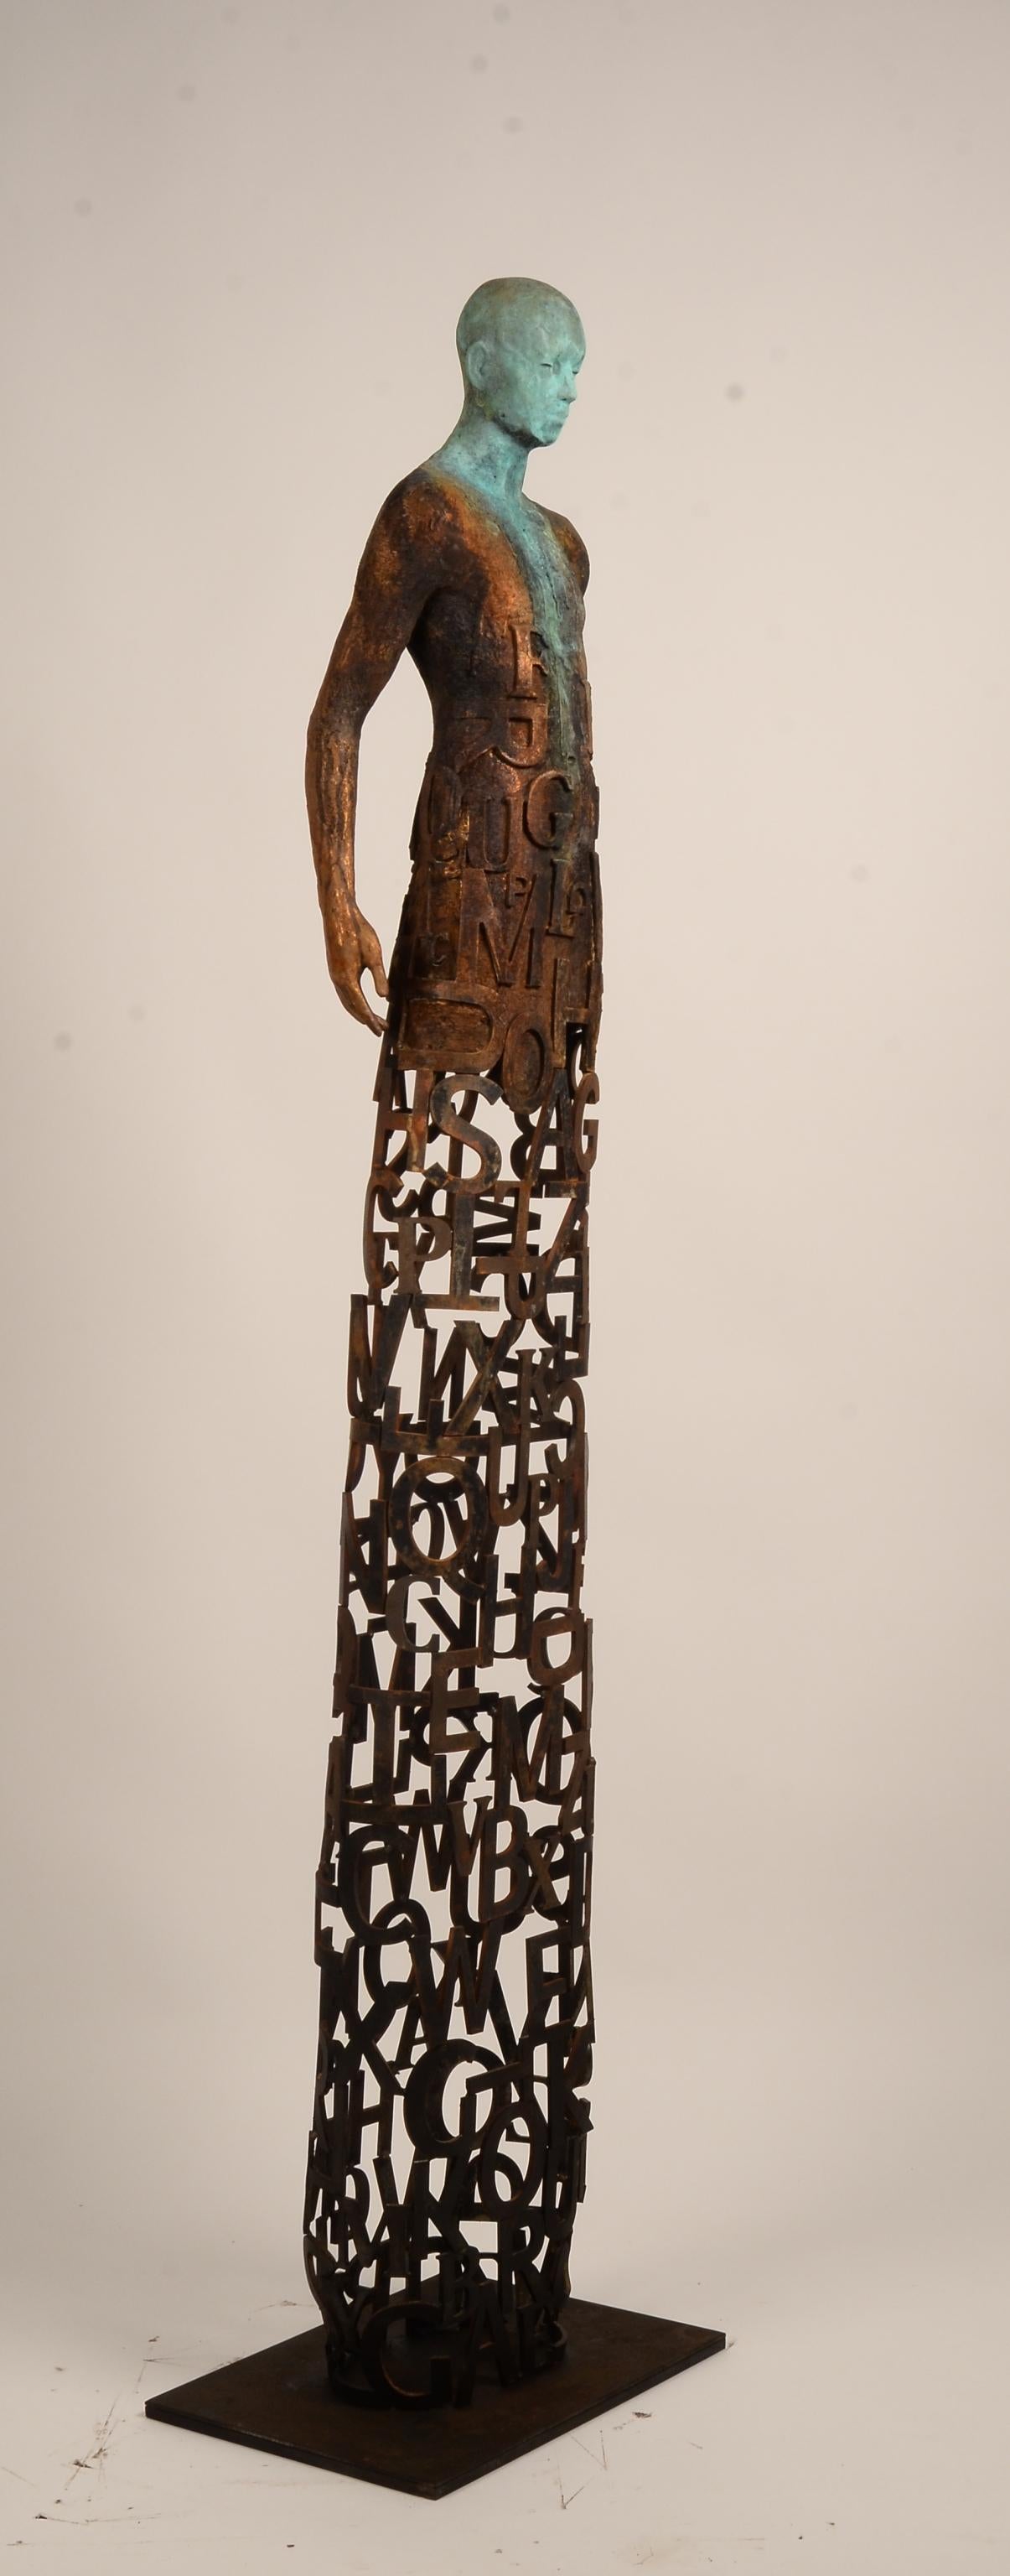 Nuntius – Skulptur aus Bronze und Stahl mit Figur und durchsichtigem „Wörter“-Garment 1